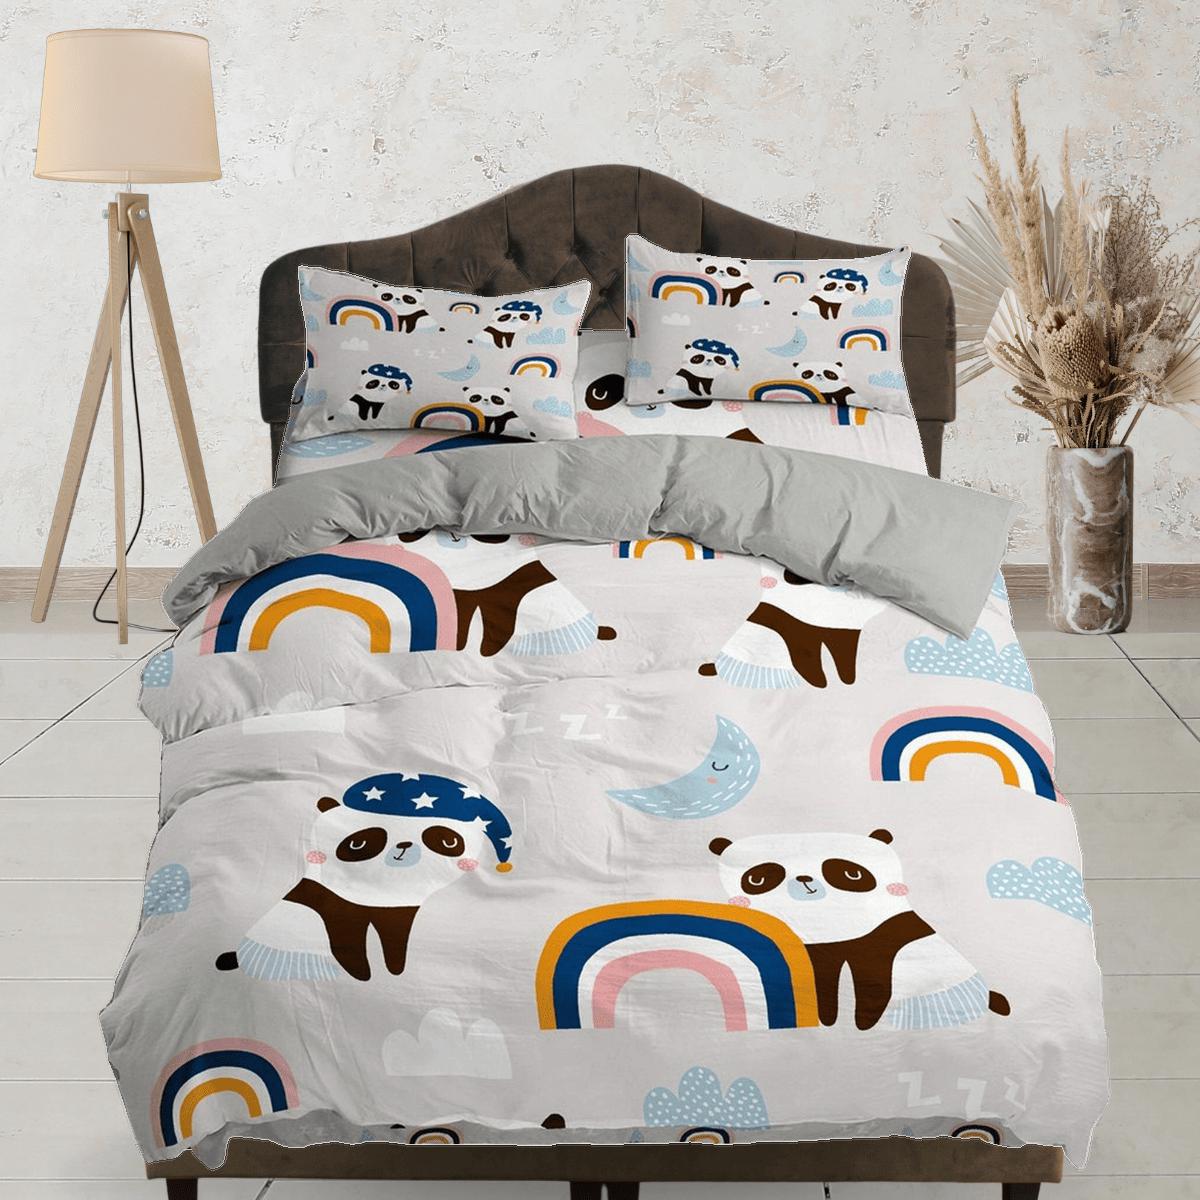 daintyduvet Panda boho rainbow duvet cover kids, bedding set full, king, queen, dorm bedding, toddler bedding, aesthetic bedspread, panda lovers gift